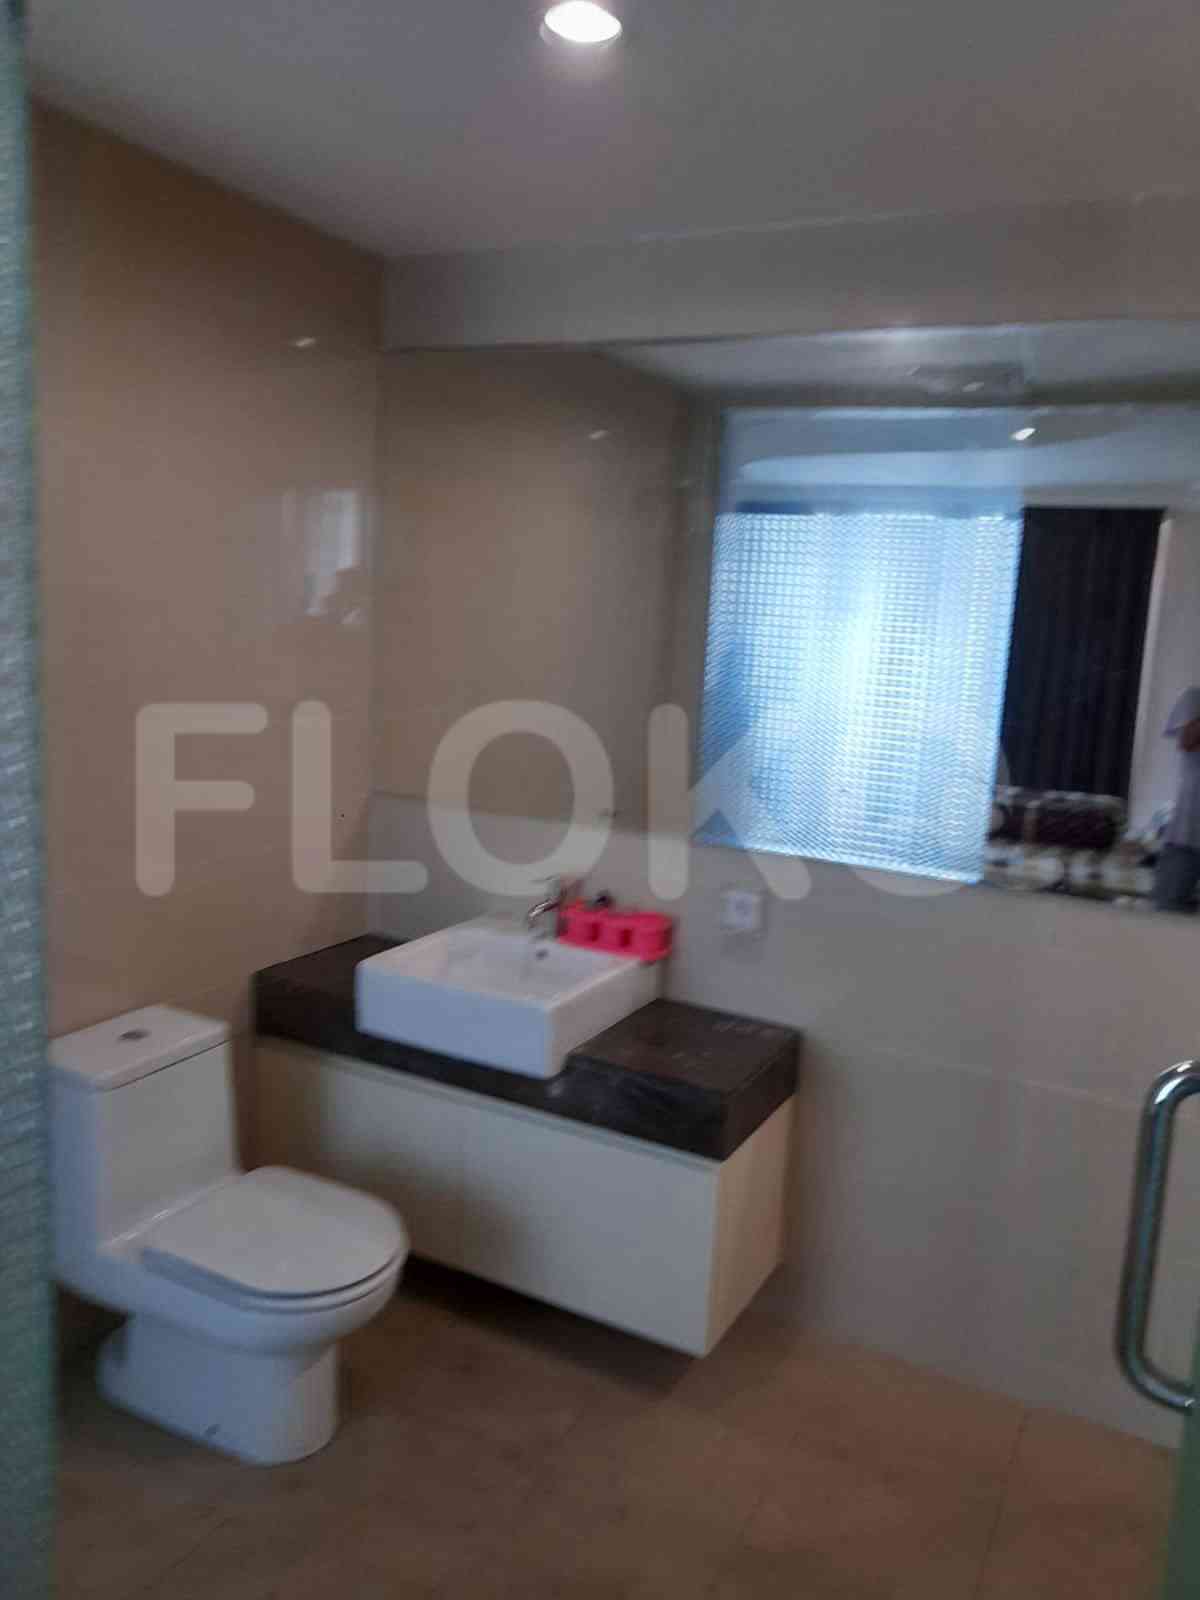 4 Bedroom on 10th Floor for Rent in Casa Grande - ftef92 6